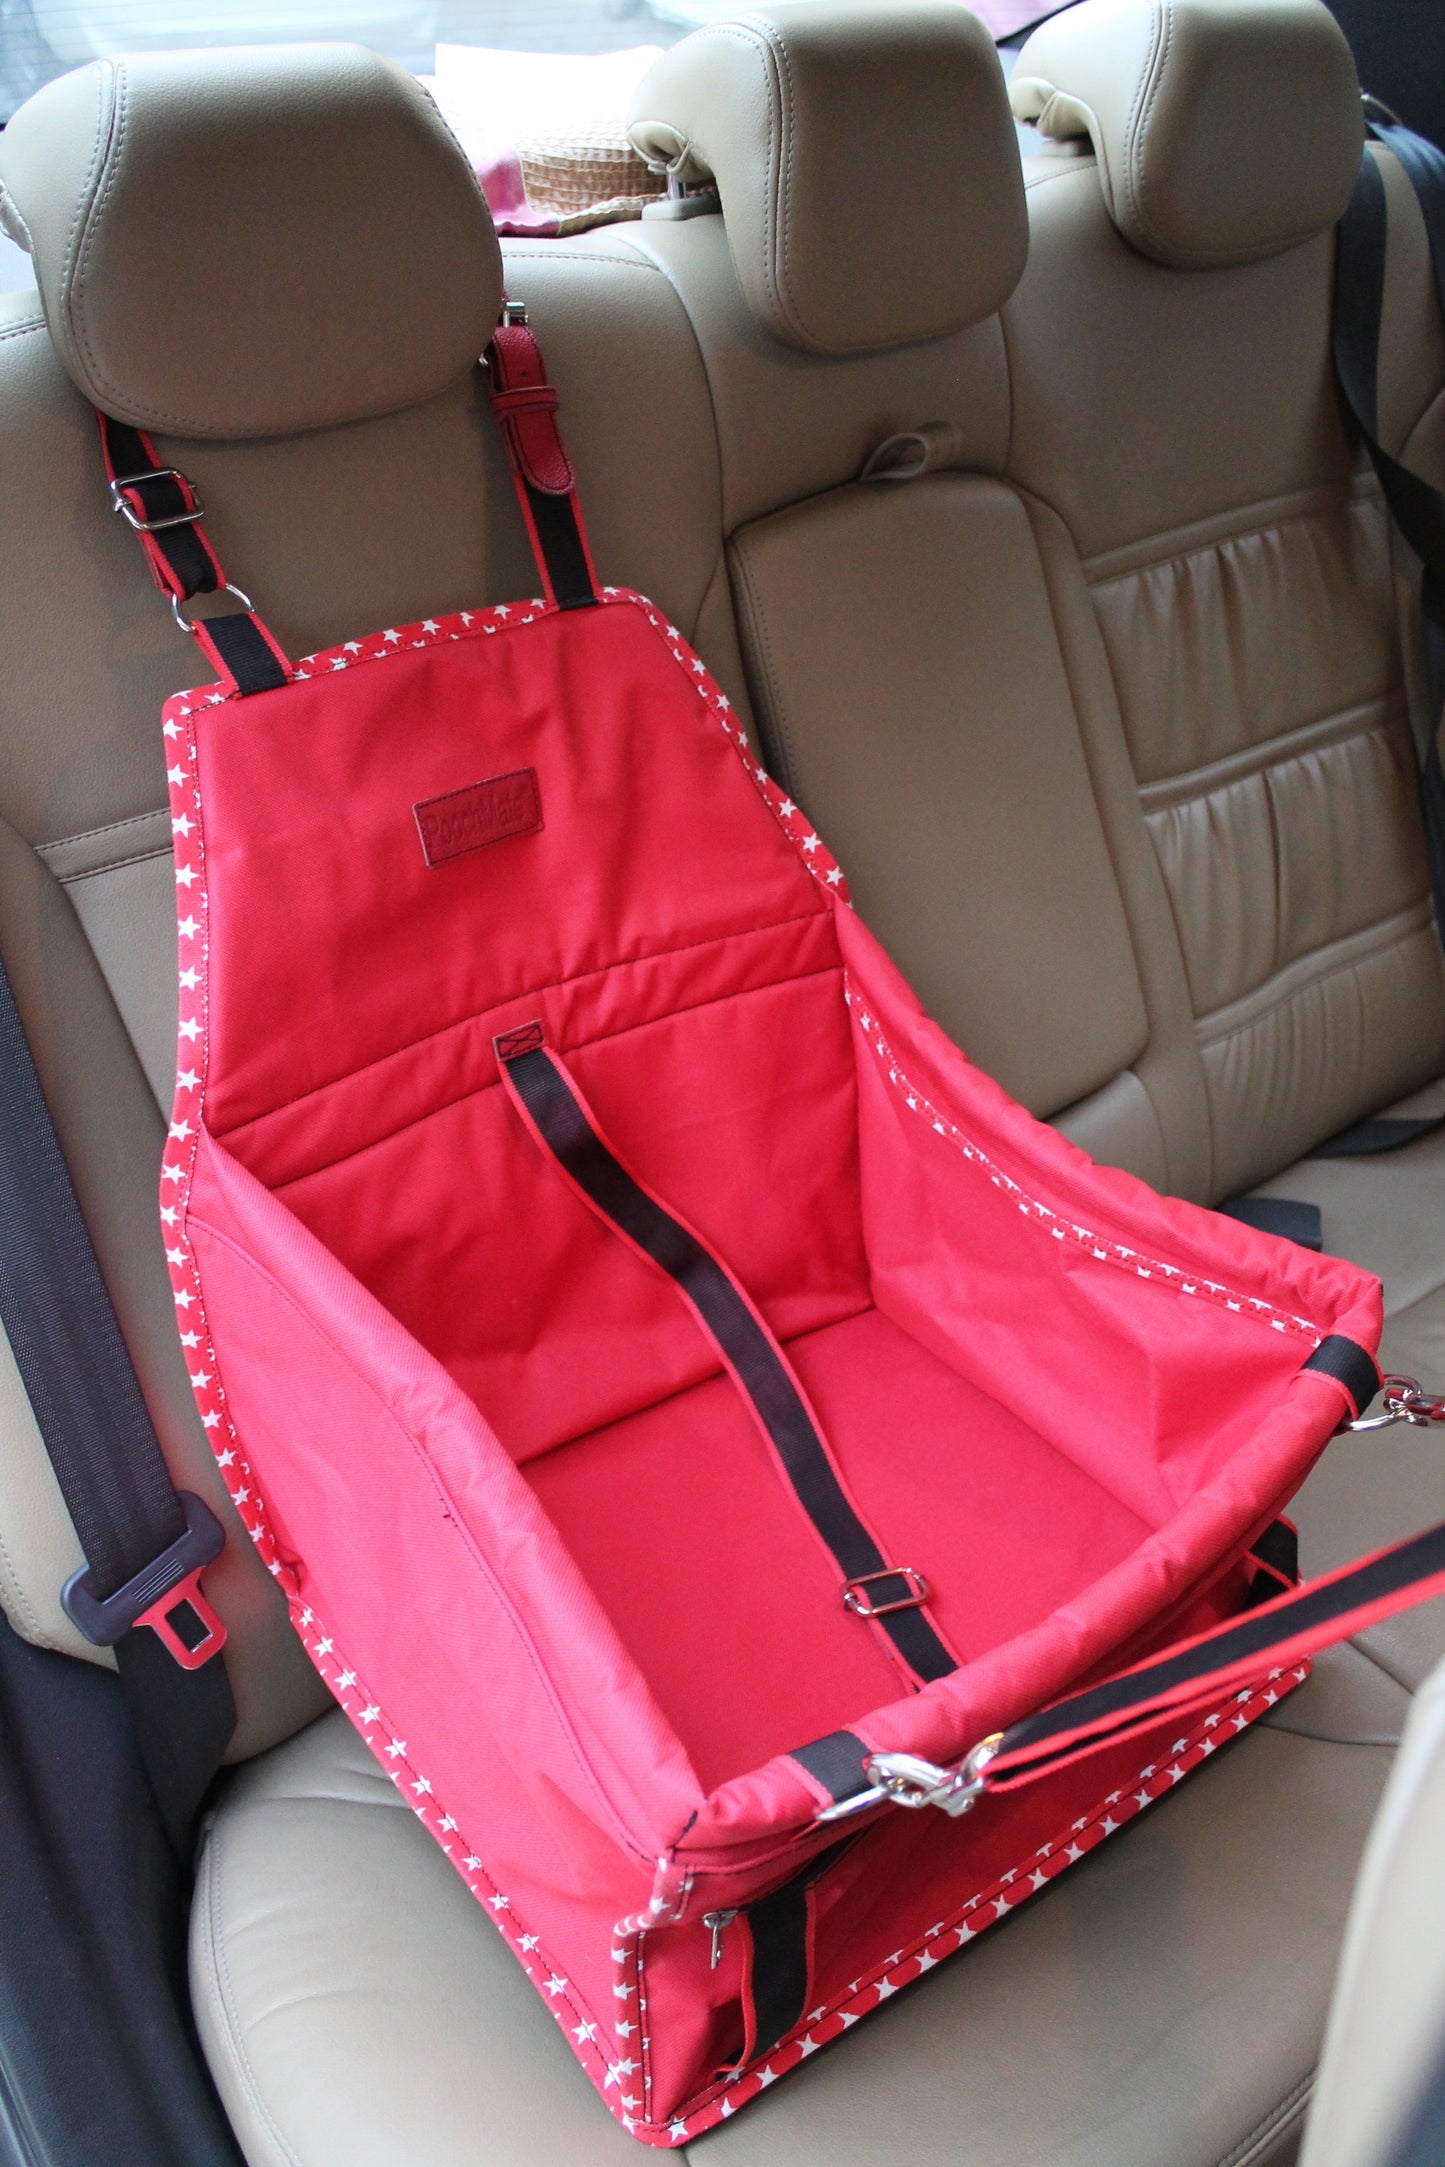 PoochMate Cradle Car Seat - Red